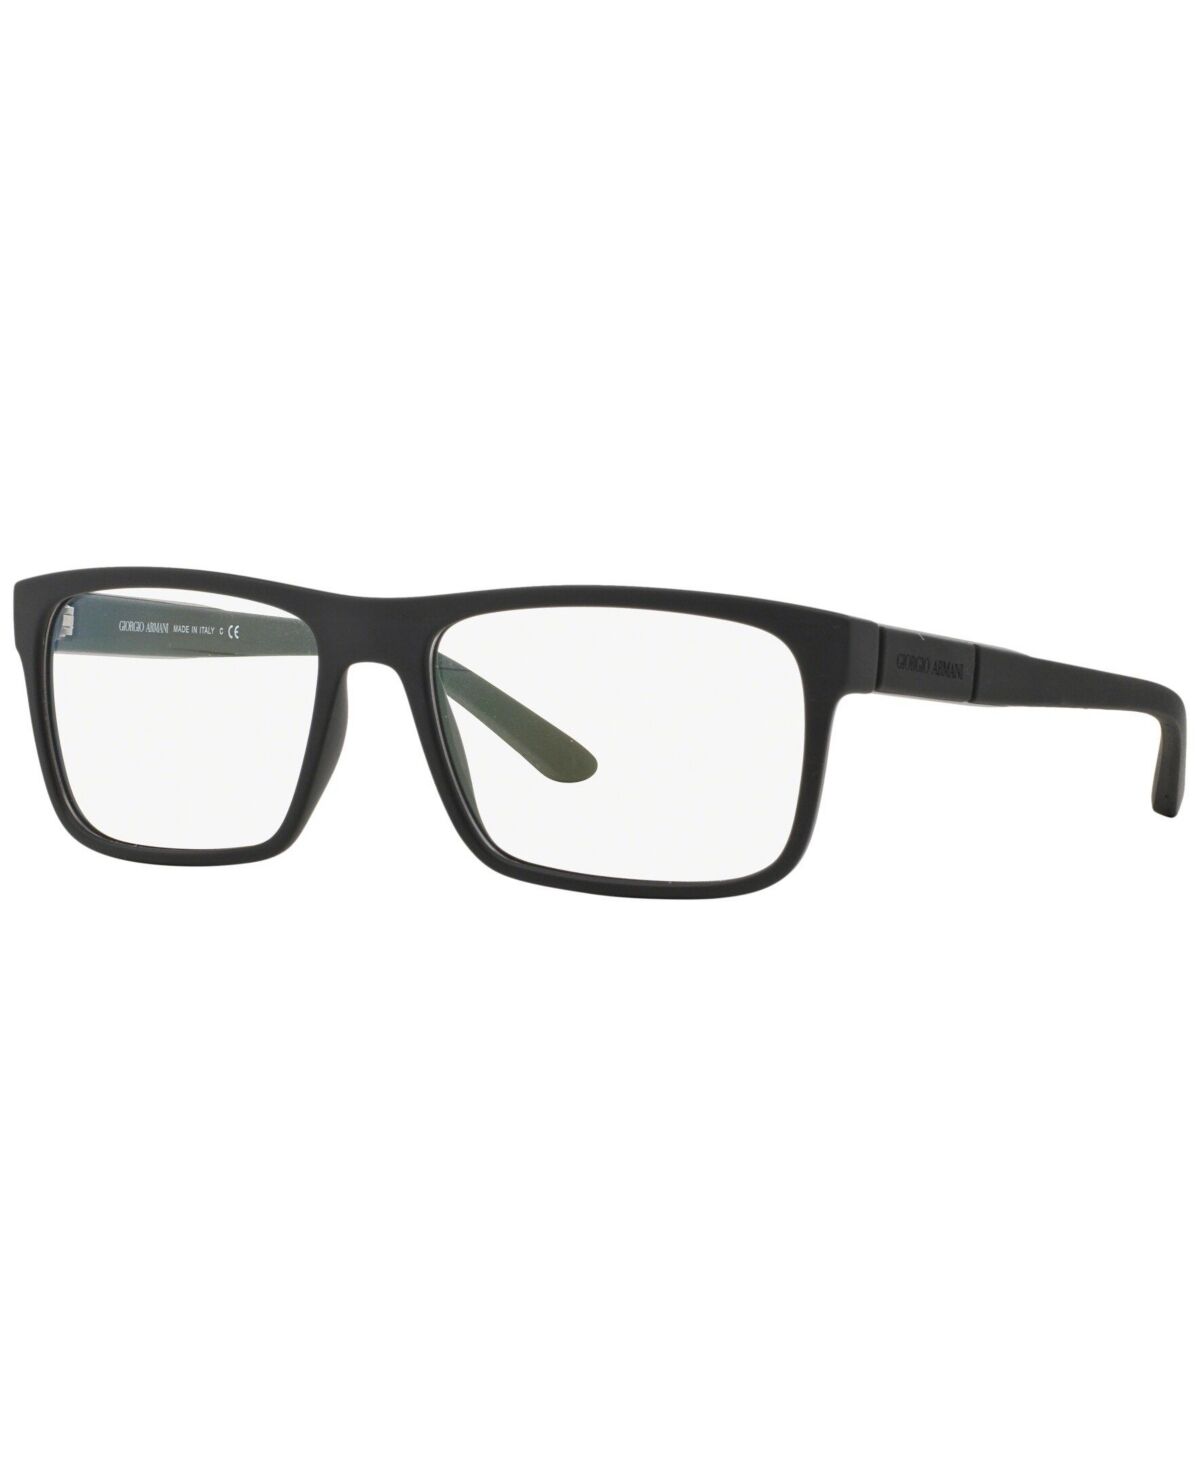 Giorgio Armani Men's Rectangle Eyeglasses - Rubber Bla